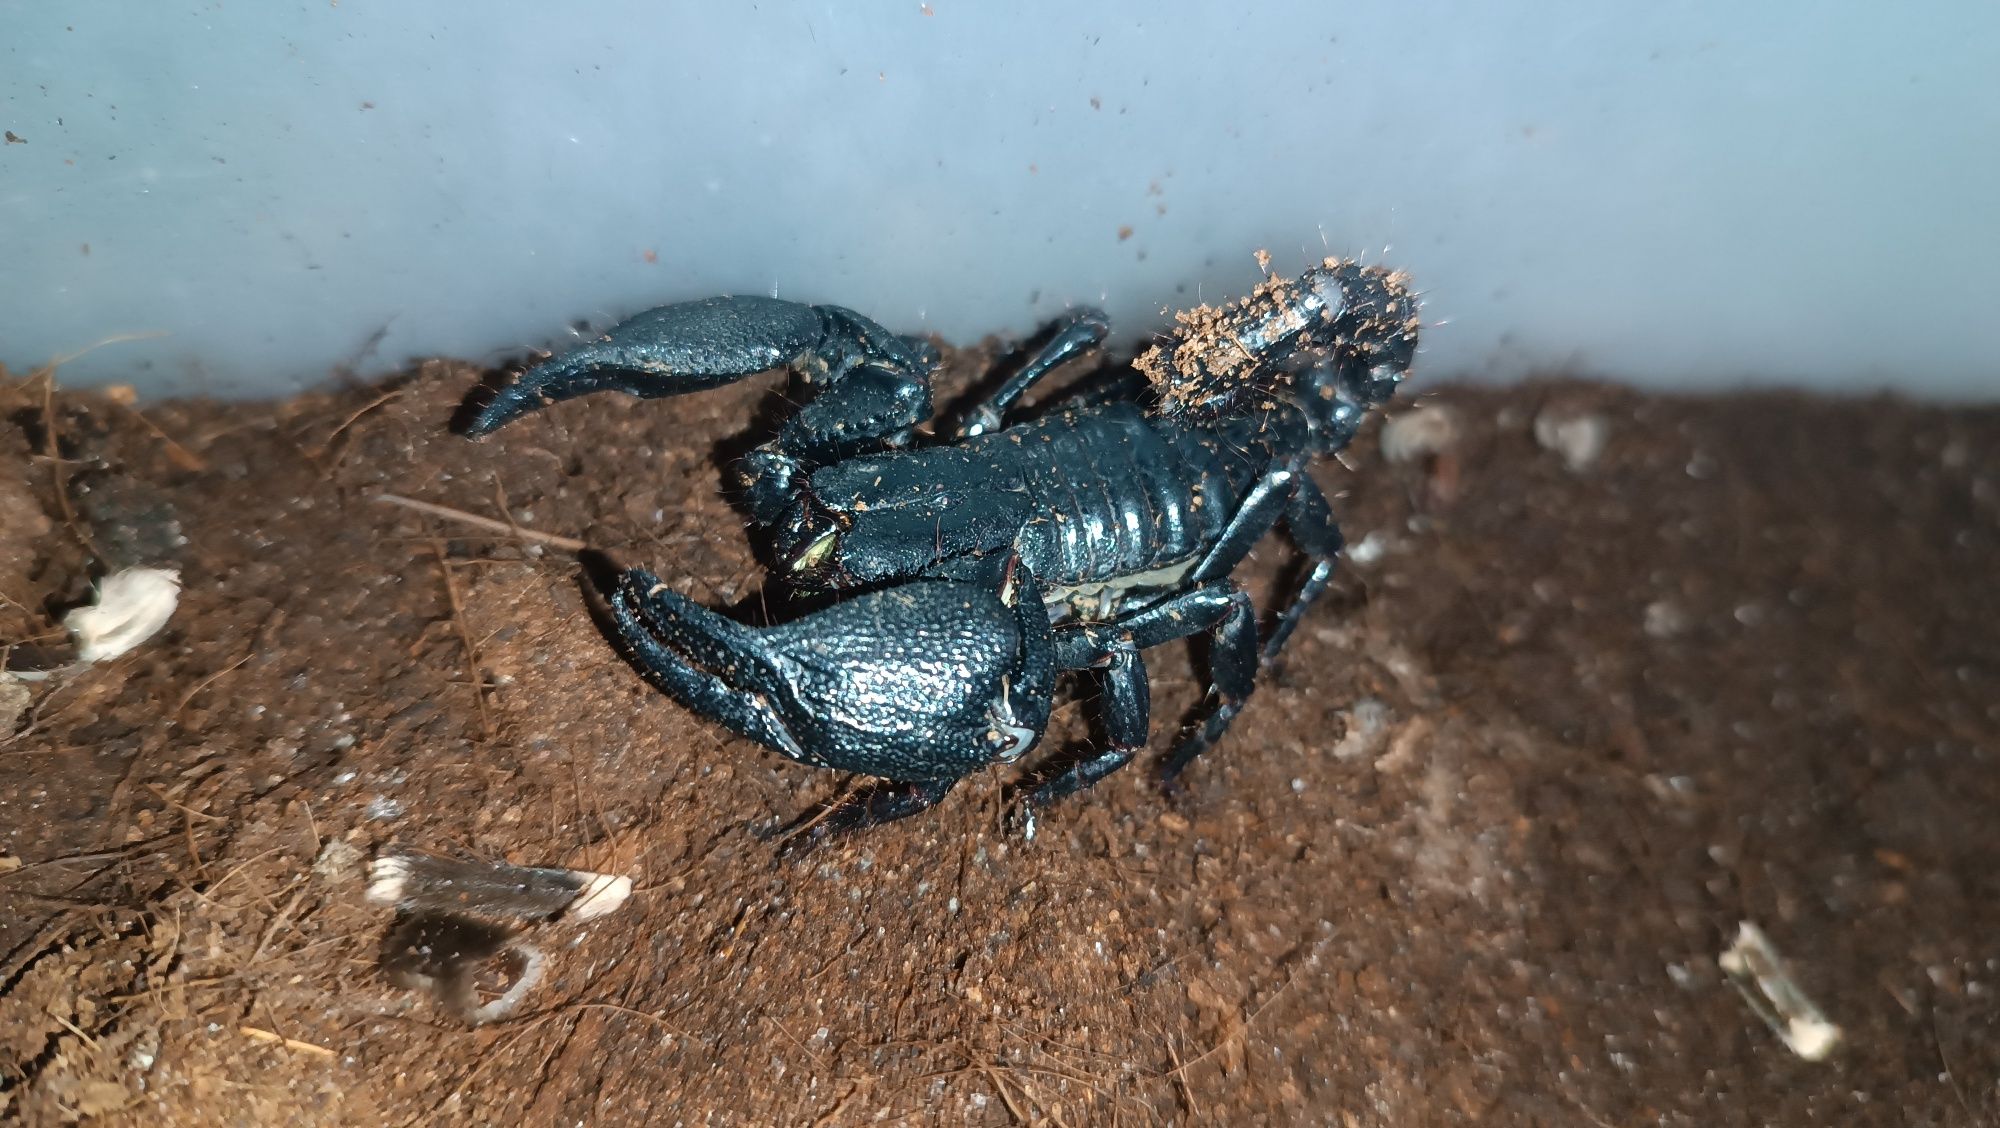 Скорпион , подростки гетерометрус спинефер, азиатский лесной скорпион